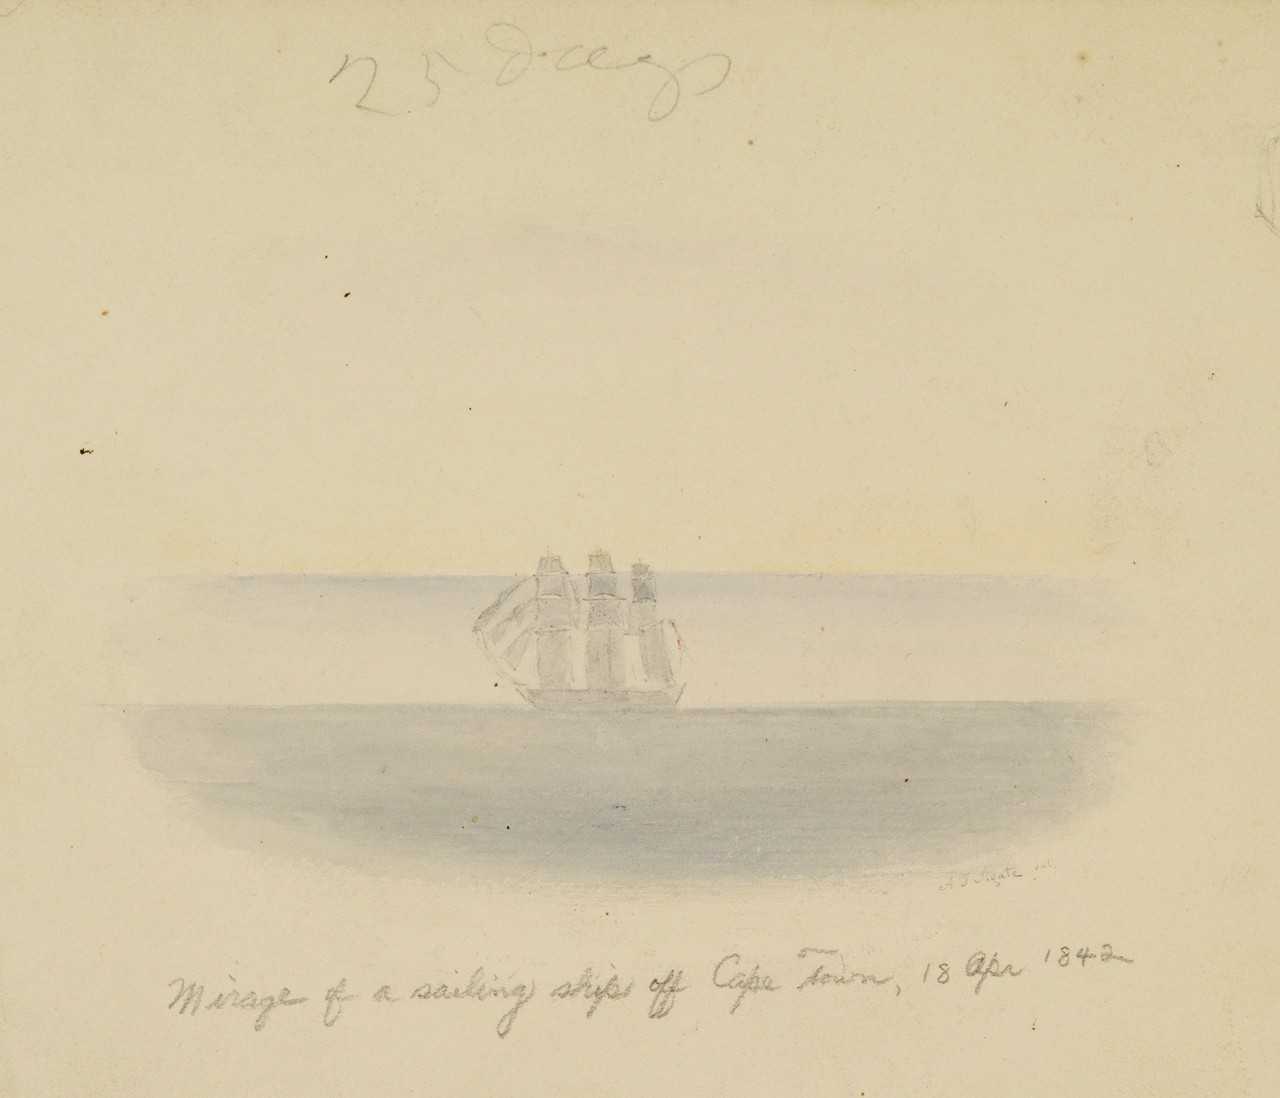 A three masted ship on the horizon